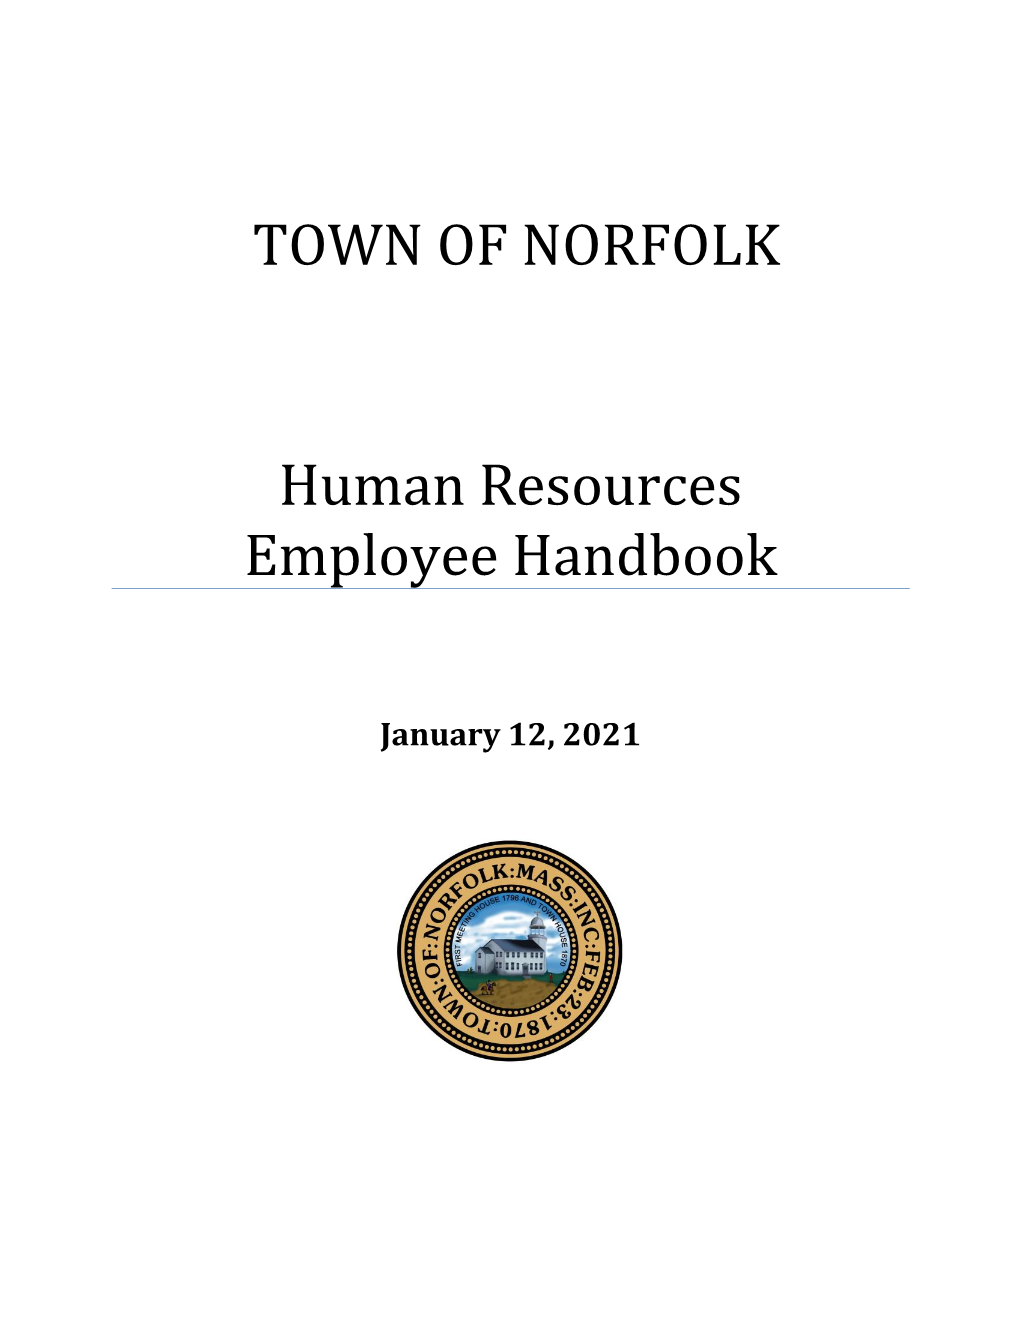 Hr Employee Handbook Disclaimer/Acknowledgement Form